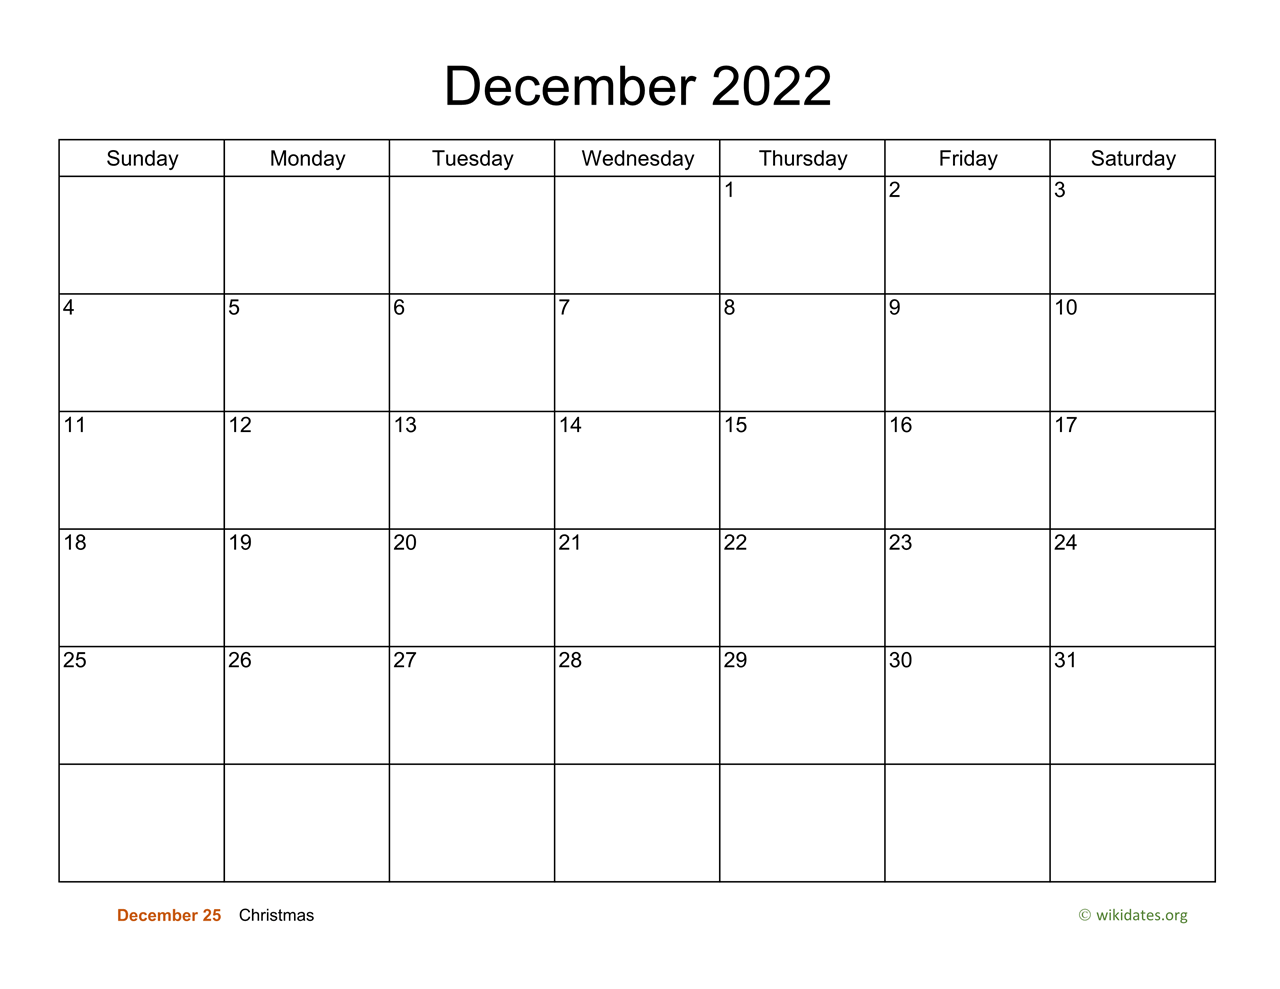 December Calendar For 2022 Basic Calendar For December 2022 | Wikidates.org